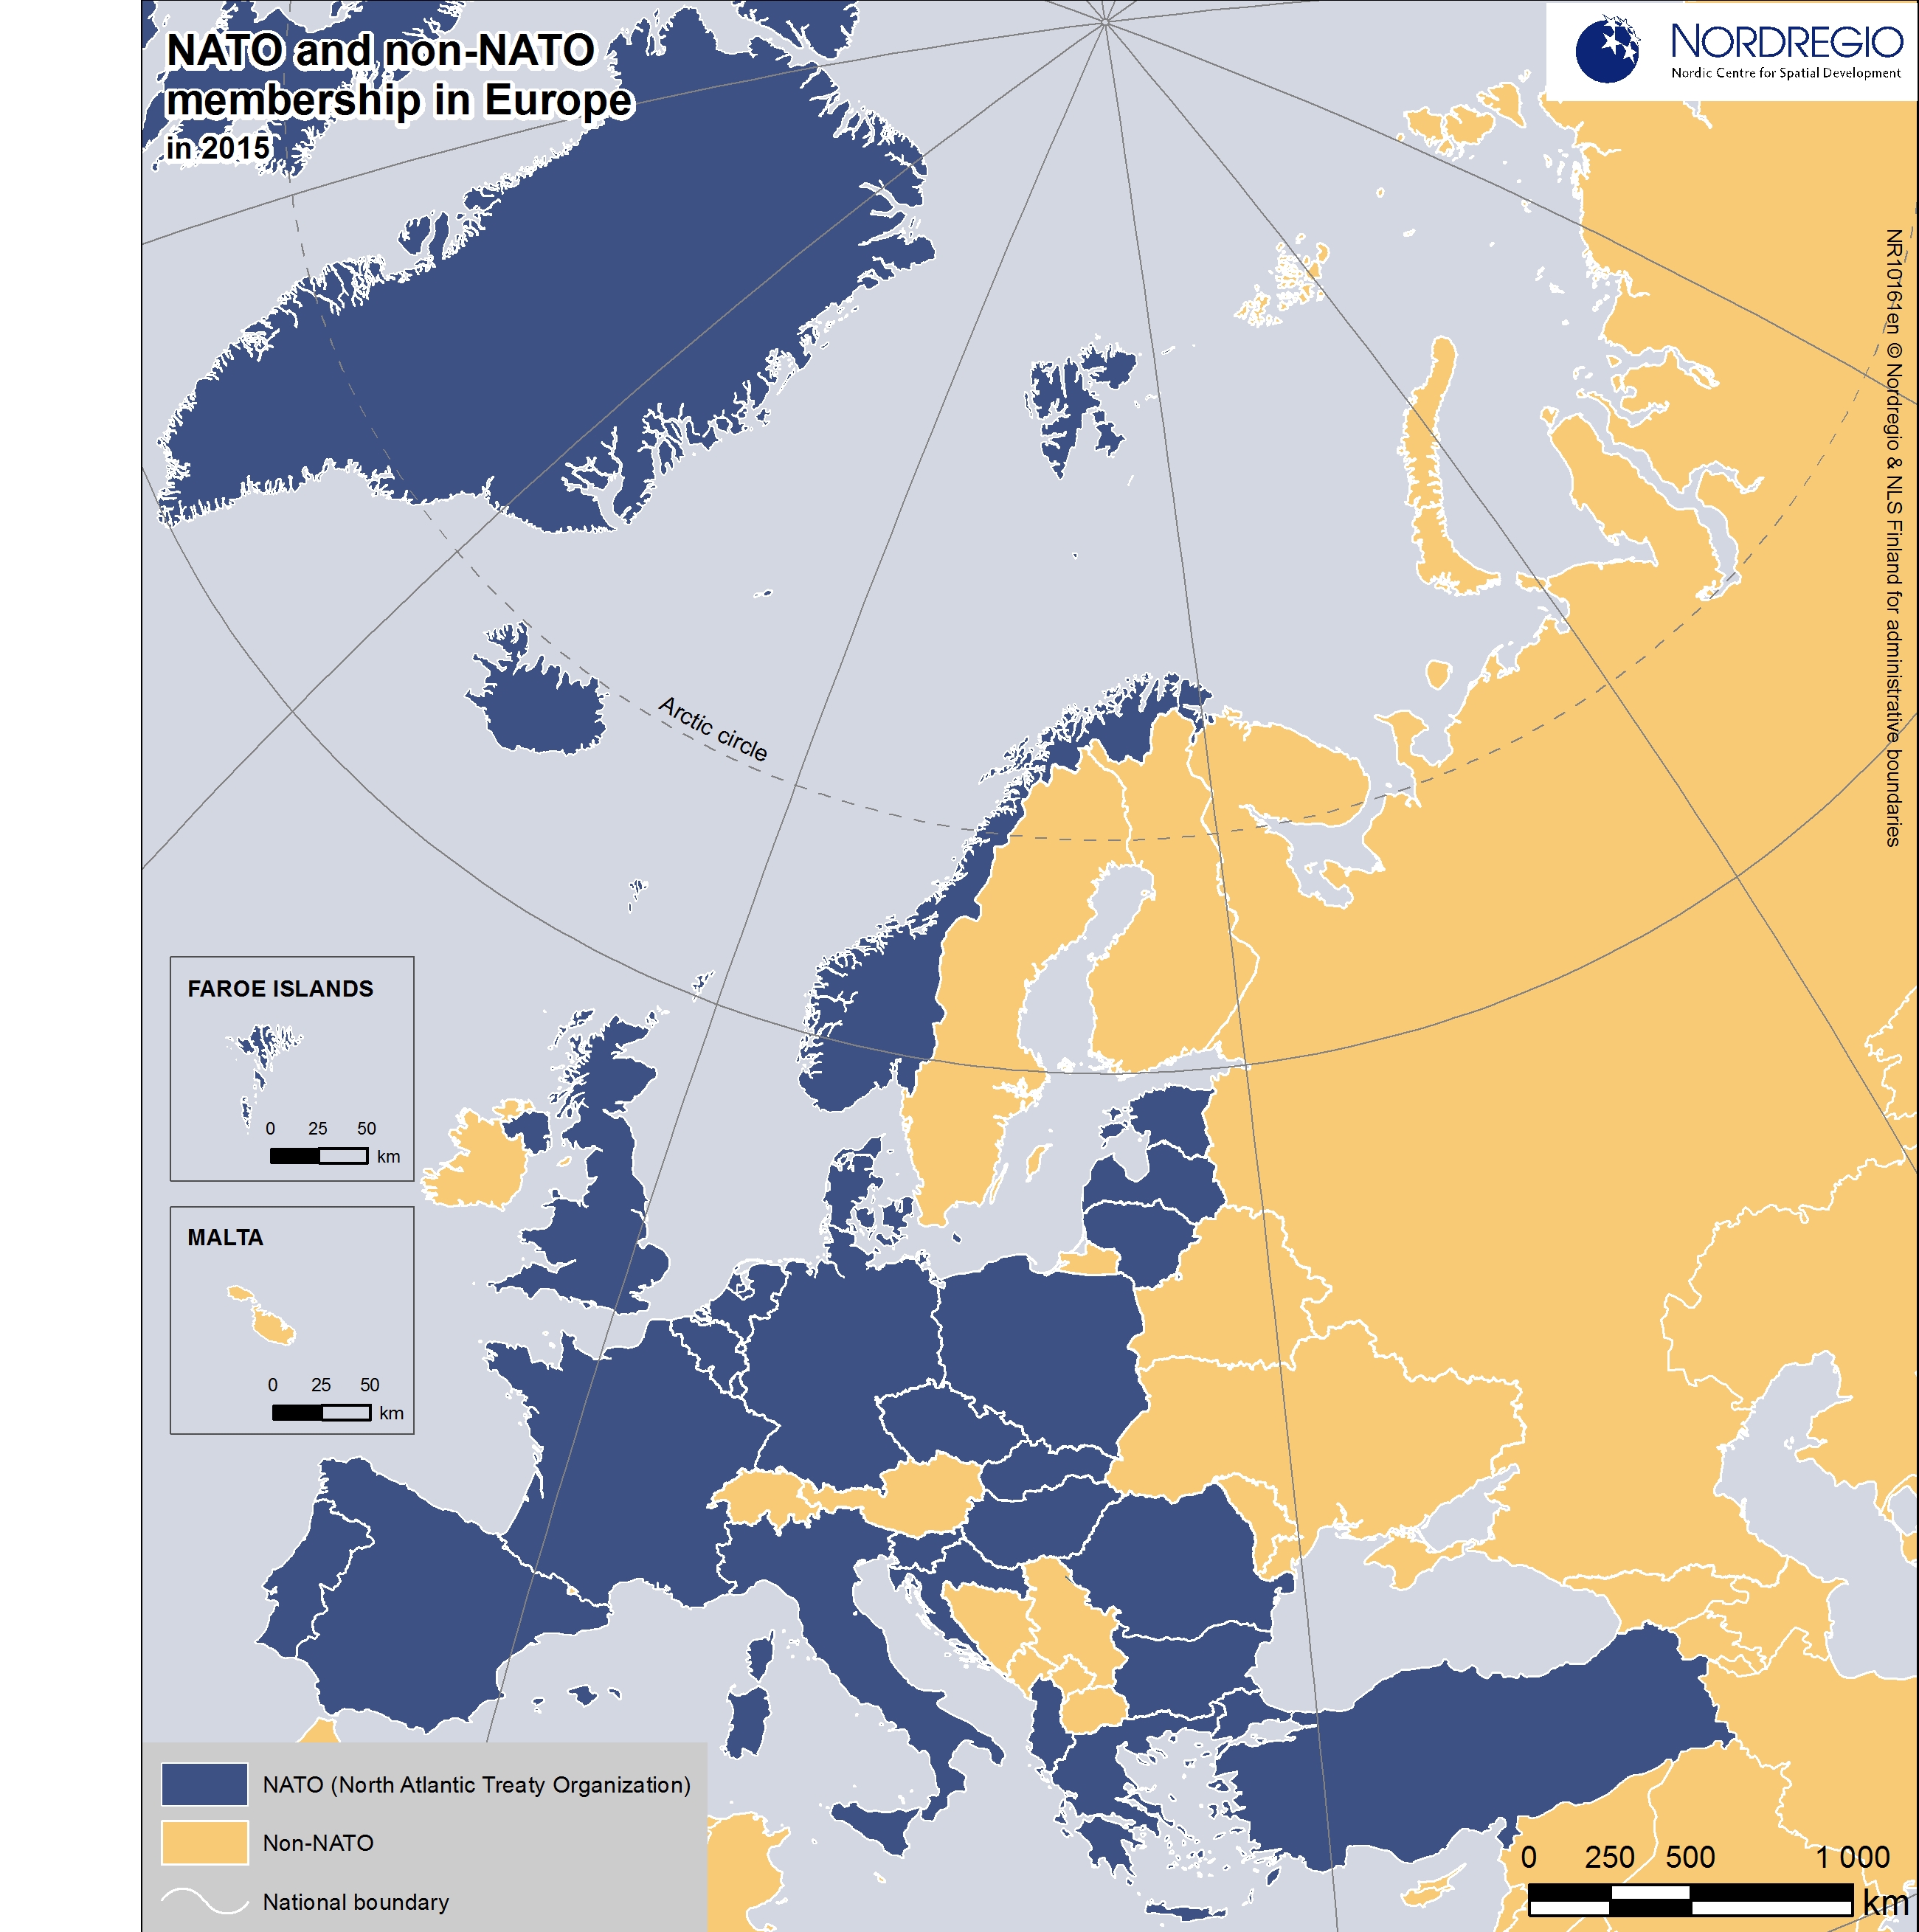 NATO and non-NATO membership in Europe in 2015 | Nordregio